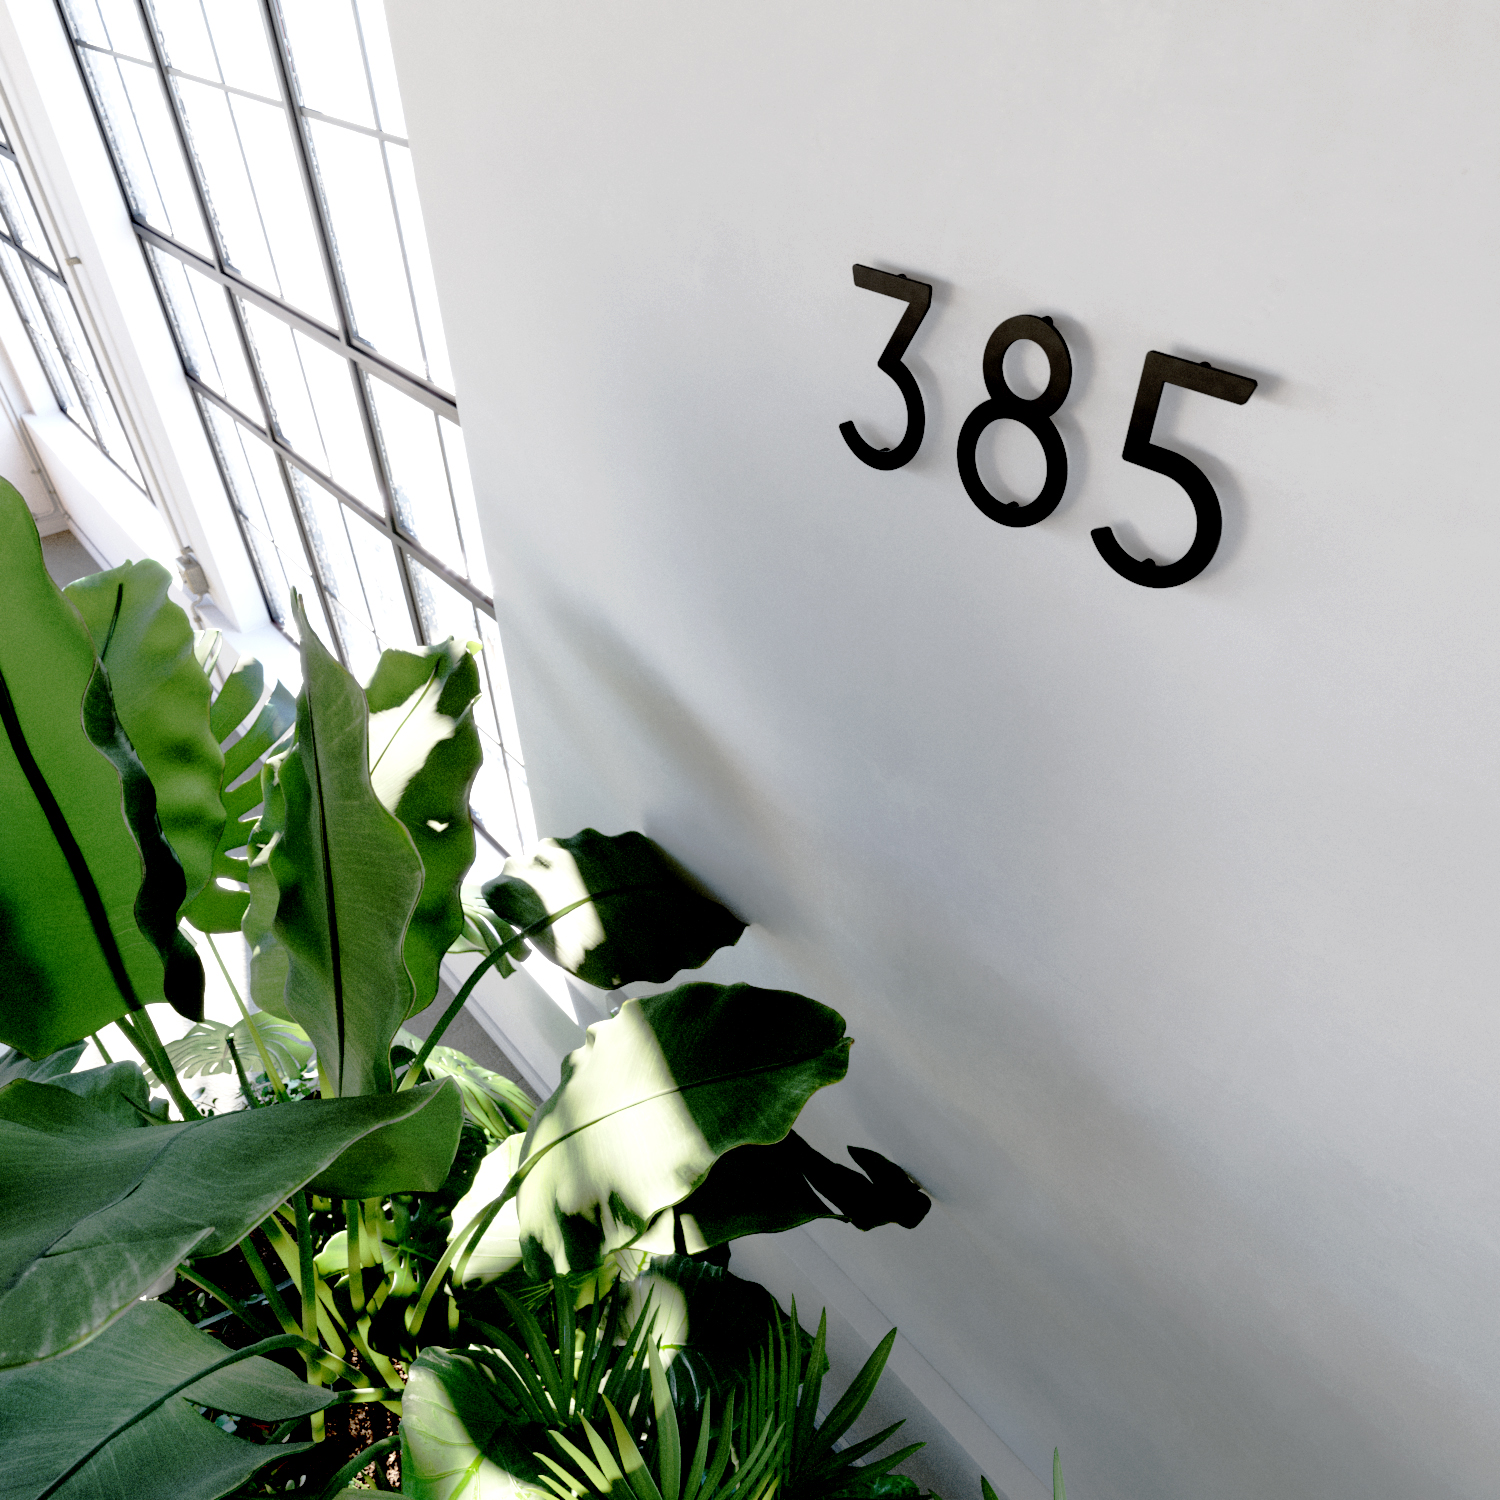 Hausnummern, die an einer Wand angebracht sind.